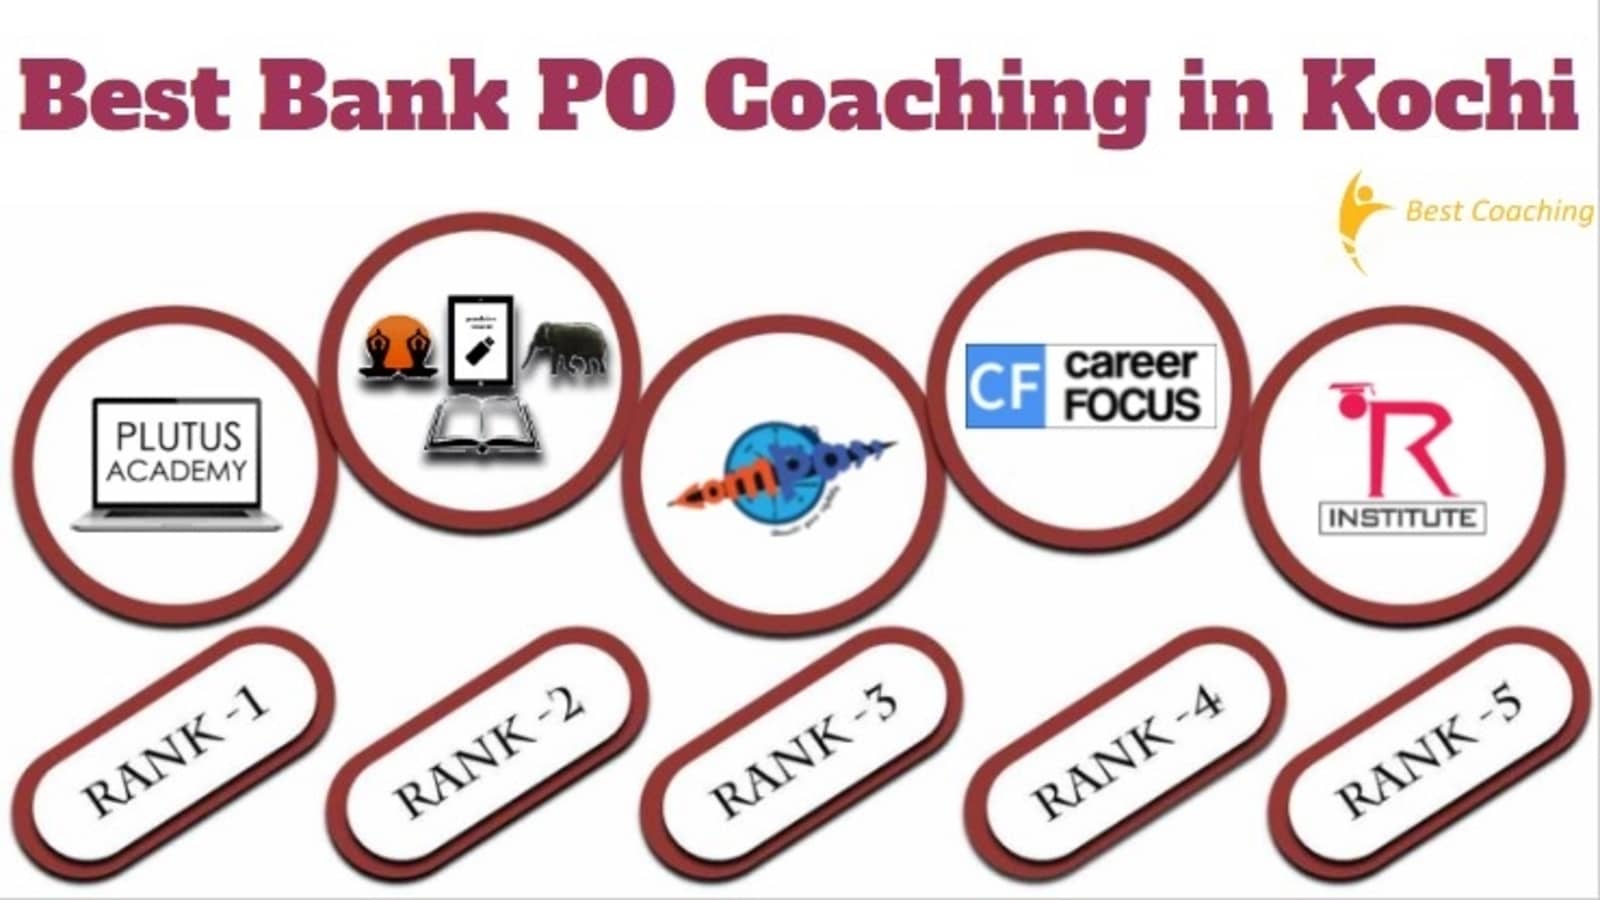 Best Bank PO Coaching in Kochi